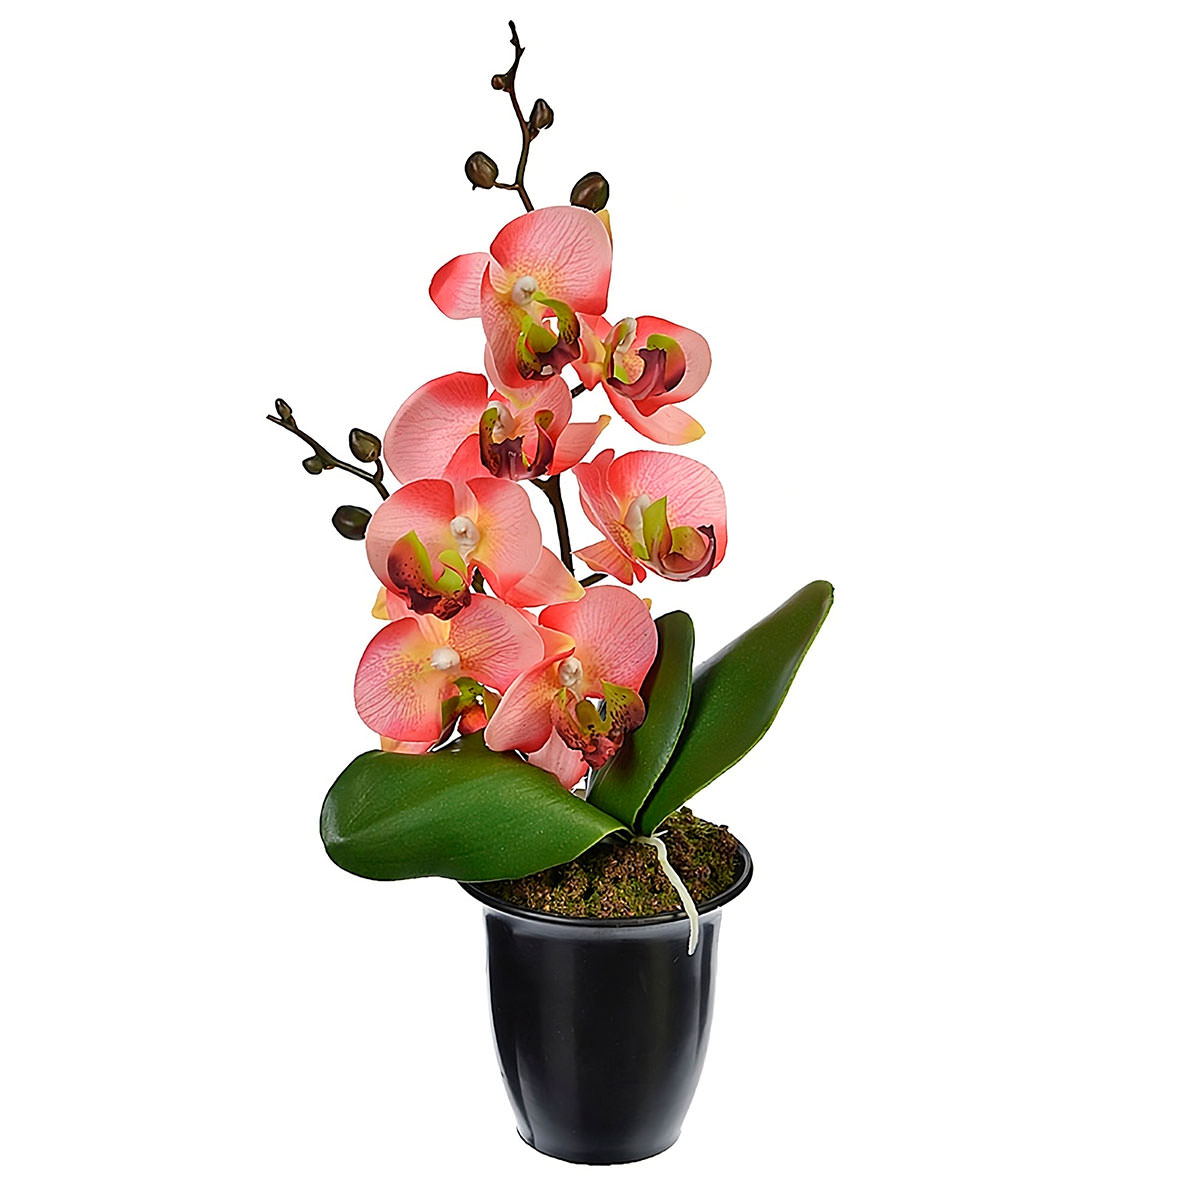 Купить цветы орхидеи в горшке. Цветок в горшке фаленопсис. Орхидея Цимбидиум в горшке. Фаленопсис в горшке. Орхидея фаленопсис в горшке.